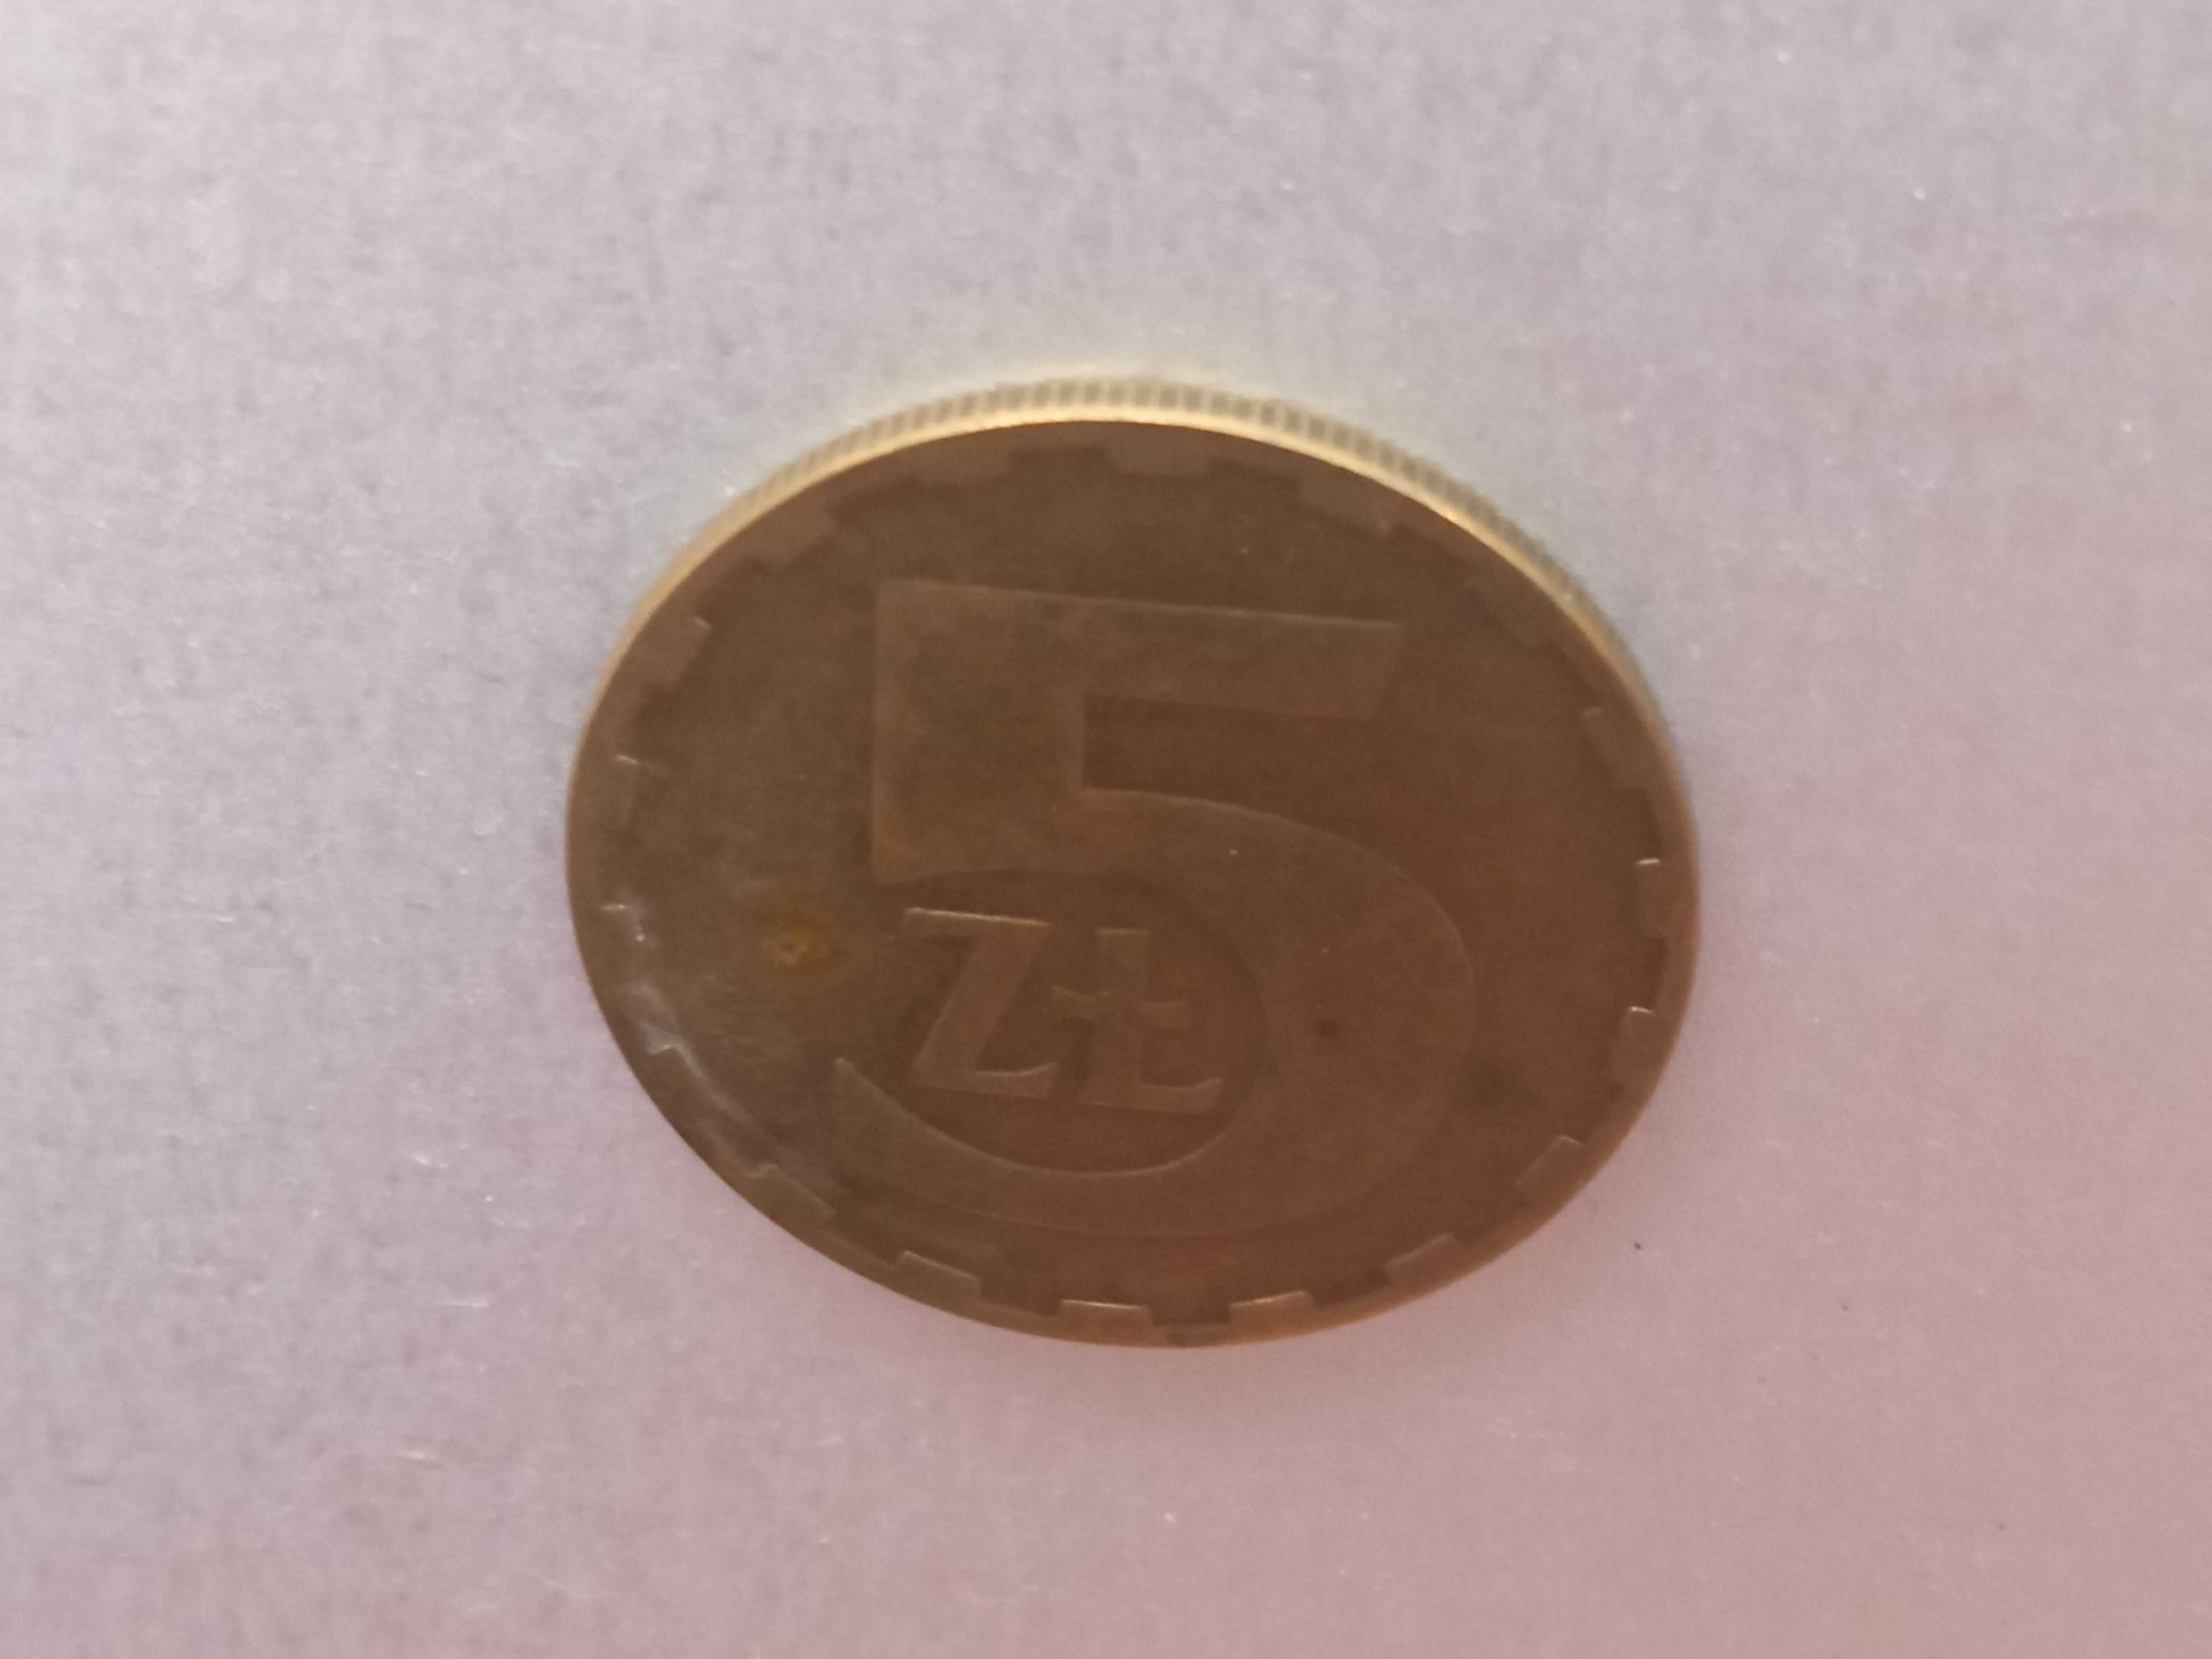 Moneta 5 zł z 1986 roku PRL